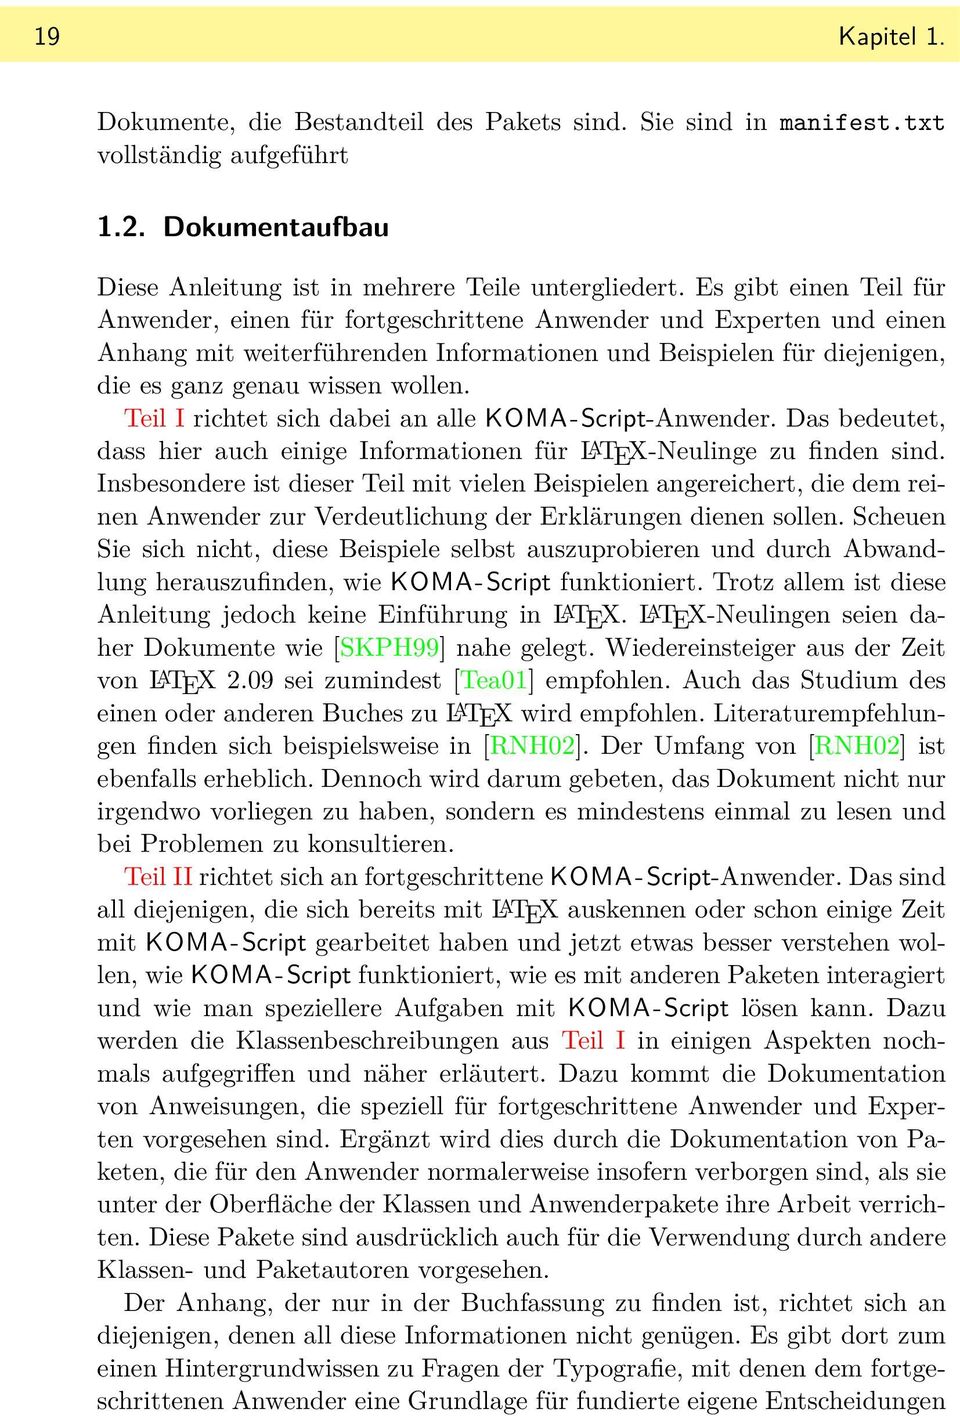 Teil I richtet sich dabei an alle KOMA- Script-Anwender. Das bedeutet, dass hier auch einige Informationen für L A TEX-Neulinge zu finden sind.